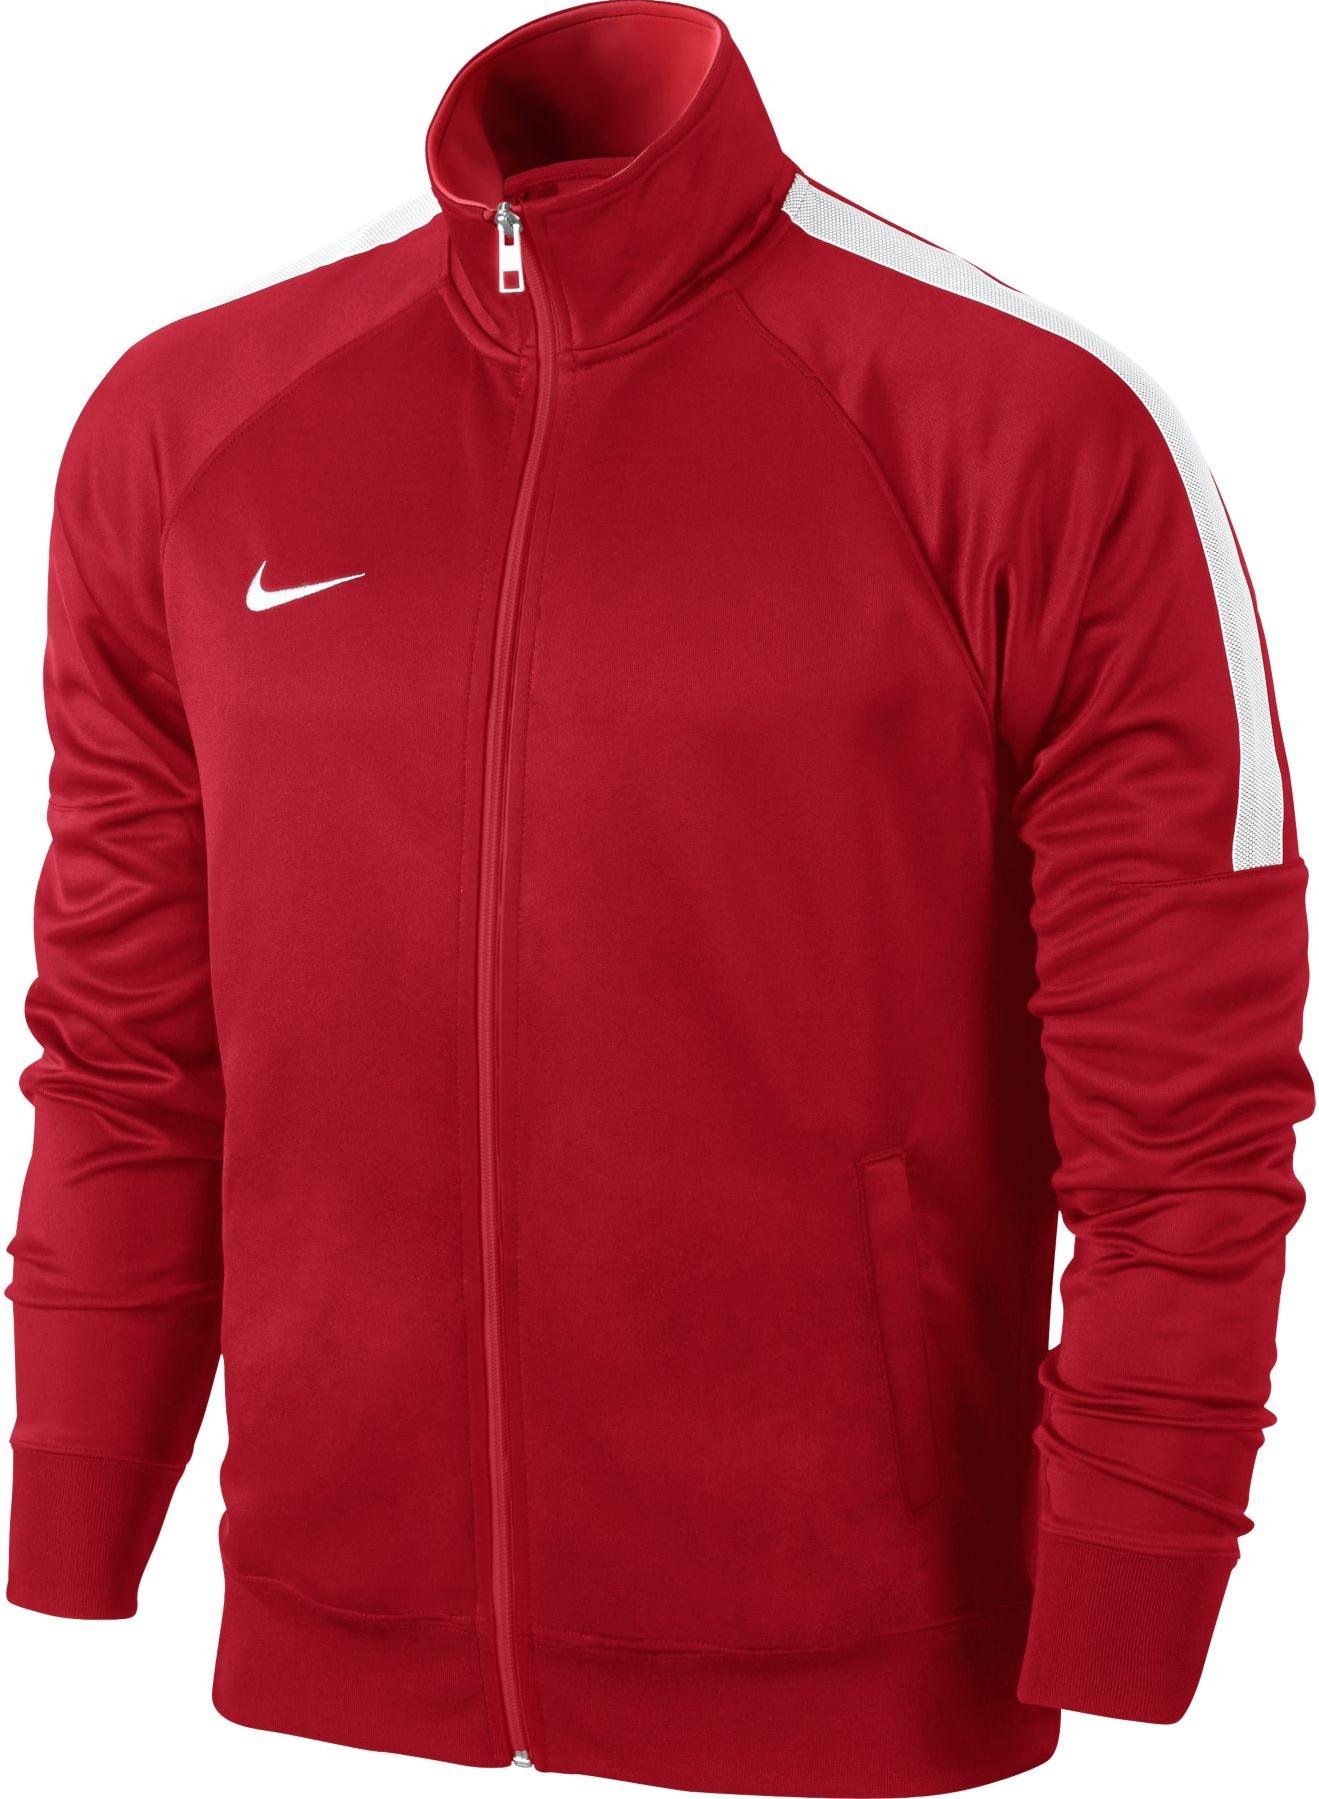 Jacket Nike Team Club Trainer Jacket 